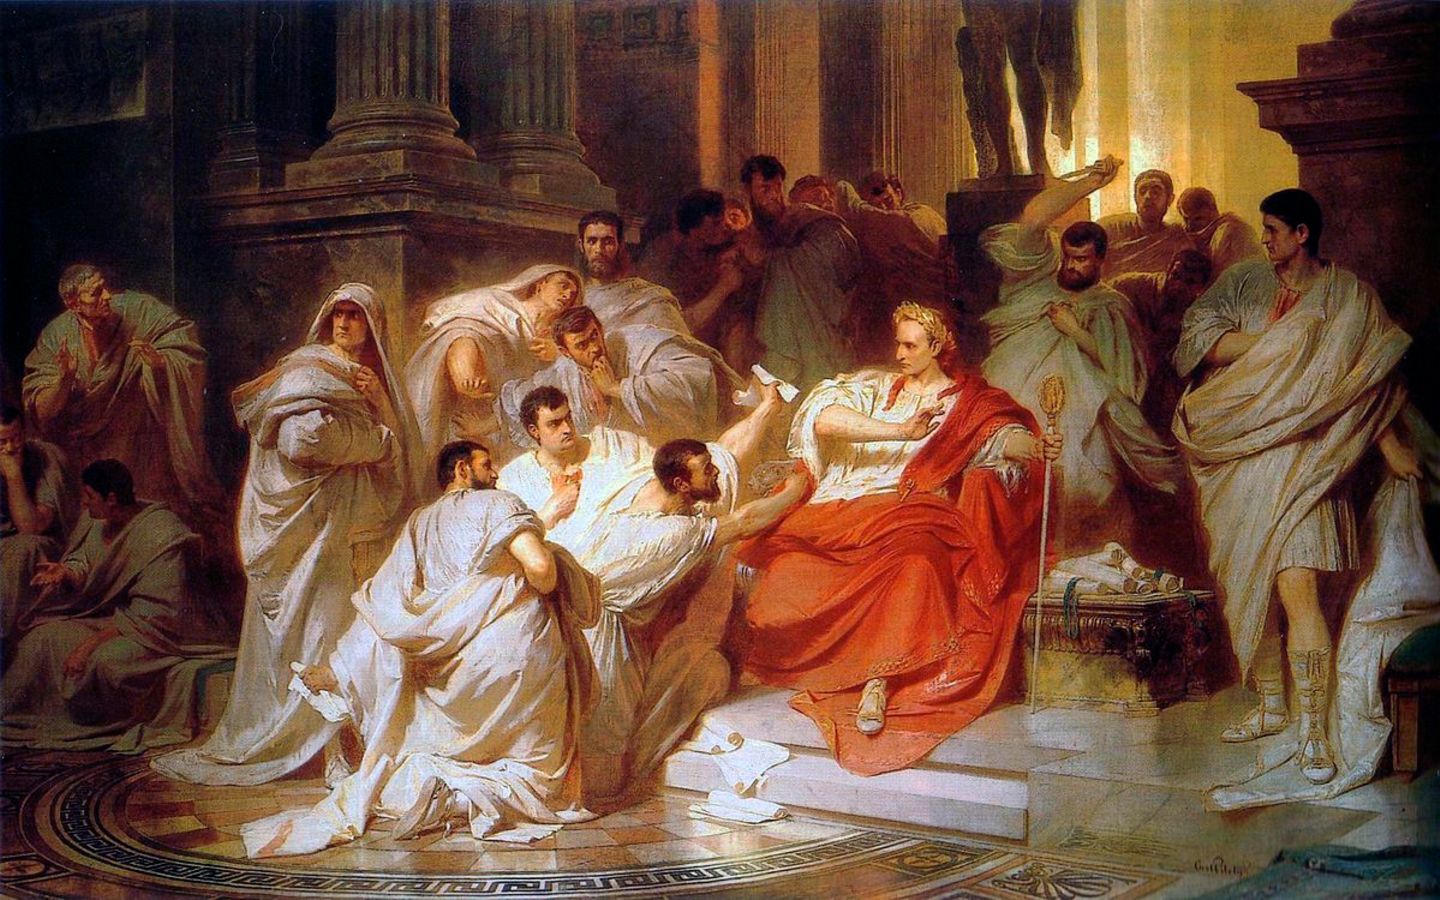 15. März: Julius Caesar wird ermordet   "Hüte dich vor den Iden des März." Mit diesen Worten soll ein Hellseher Julius Caesar vor dem aufziehenden Unheil gewarnt haben. Der römische Imperator selbst habe in der Nacht vor seinem Tod geträumt, er schwebe über den Wolken und reiche dem Gott Jupiter seine Rechte, berichtete der Historiker Sueton. Und Caesars Ehefrau Calpurnia habe im Traum gesehen, wie Caesar in ihrem Schoß niedergestochen wird.   Ungeachtet all dieser bösen Omen erschien Caesar am 15. März 44 v. Chrisus zu der Sitzung des Senats. An diesem Tag wollte der große Feldherr seinen nächsten Feldzug gegen Parthien planen – den großen Rivalen Roms. Doch dazu kam es nicht mehr. An die 60 Senatoren stürzten sich auf Caesar und erdolchten den mächtigsten Mann Roms.   Publius Servilius Casca soll als erster seinen Dolch gezogen haben. Das Gemälde von Karl von Piloty "Die Ermordung Caesars" aus dem Jahr 1865 zeigt den tragischen Augenblick, wie ihn sich der Maler vorgestellt hat.   Die Ermordung Caesars zählt zu den großen Wendemarken der Geschichte. Die Zeit der Republik war endgültig zu Ende. Nach dem blutigen Bürgerkrieg, der nach Caesars Tod ausbrach, gab es nur noch eine Lösung: Ein Kaiser musste Rom regieren.